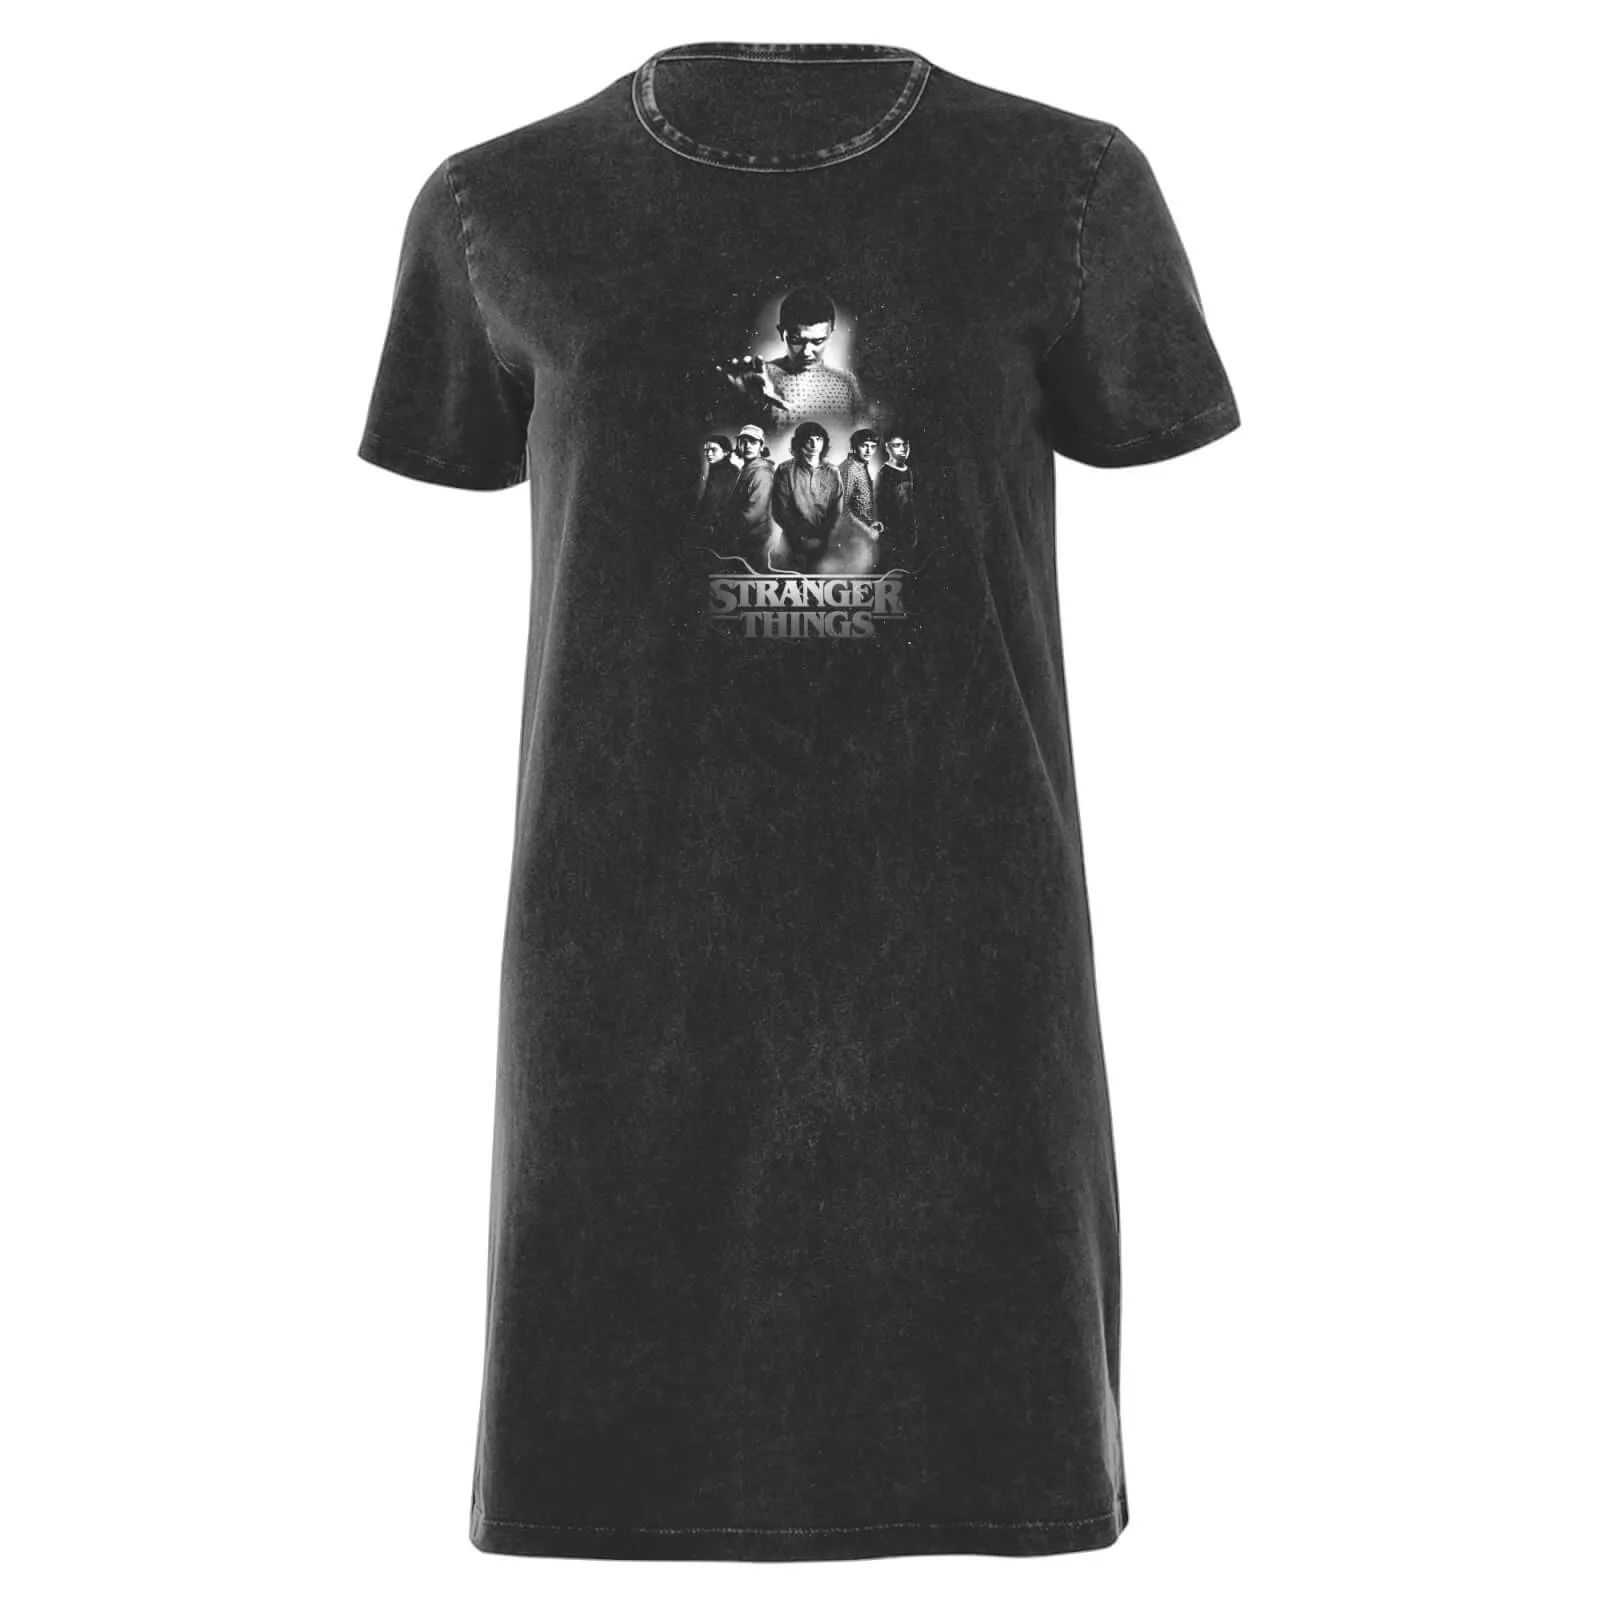  - Vestito T-shirt da donna con composizione dei personaggi in bianco e nero - Lavaggio acido nero - L - Black Acid Wash